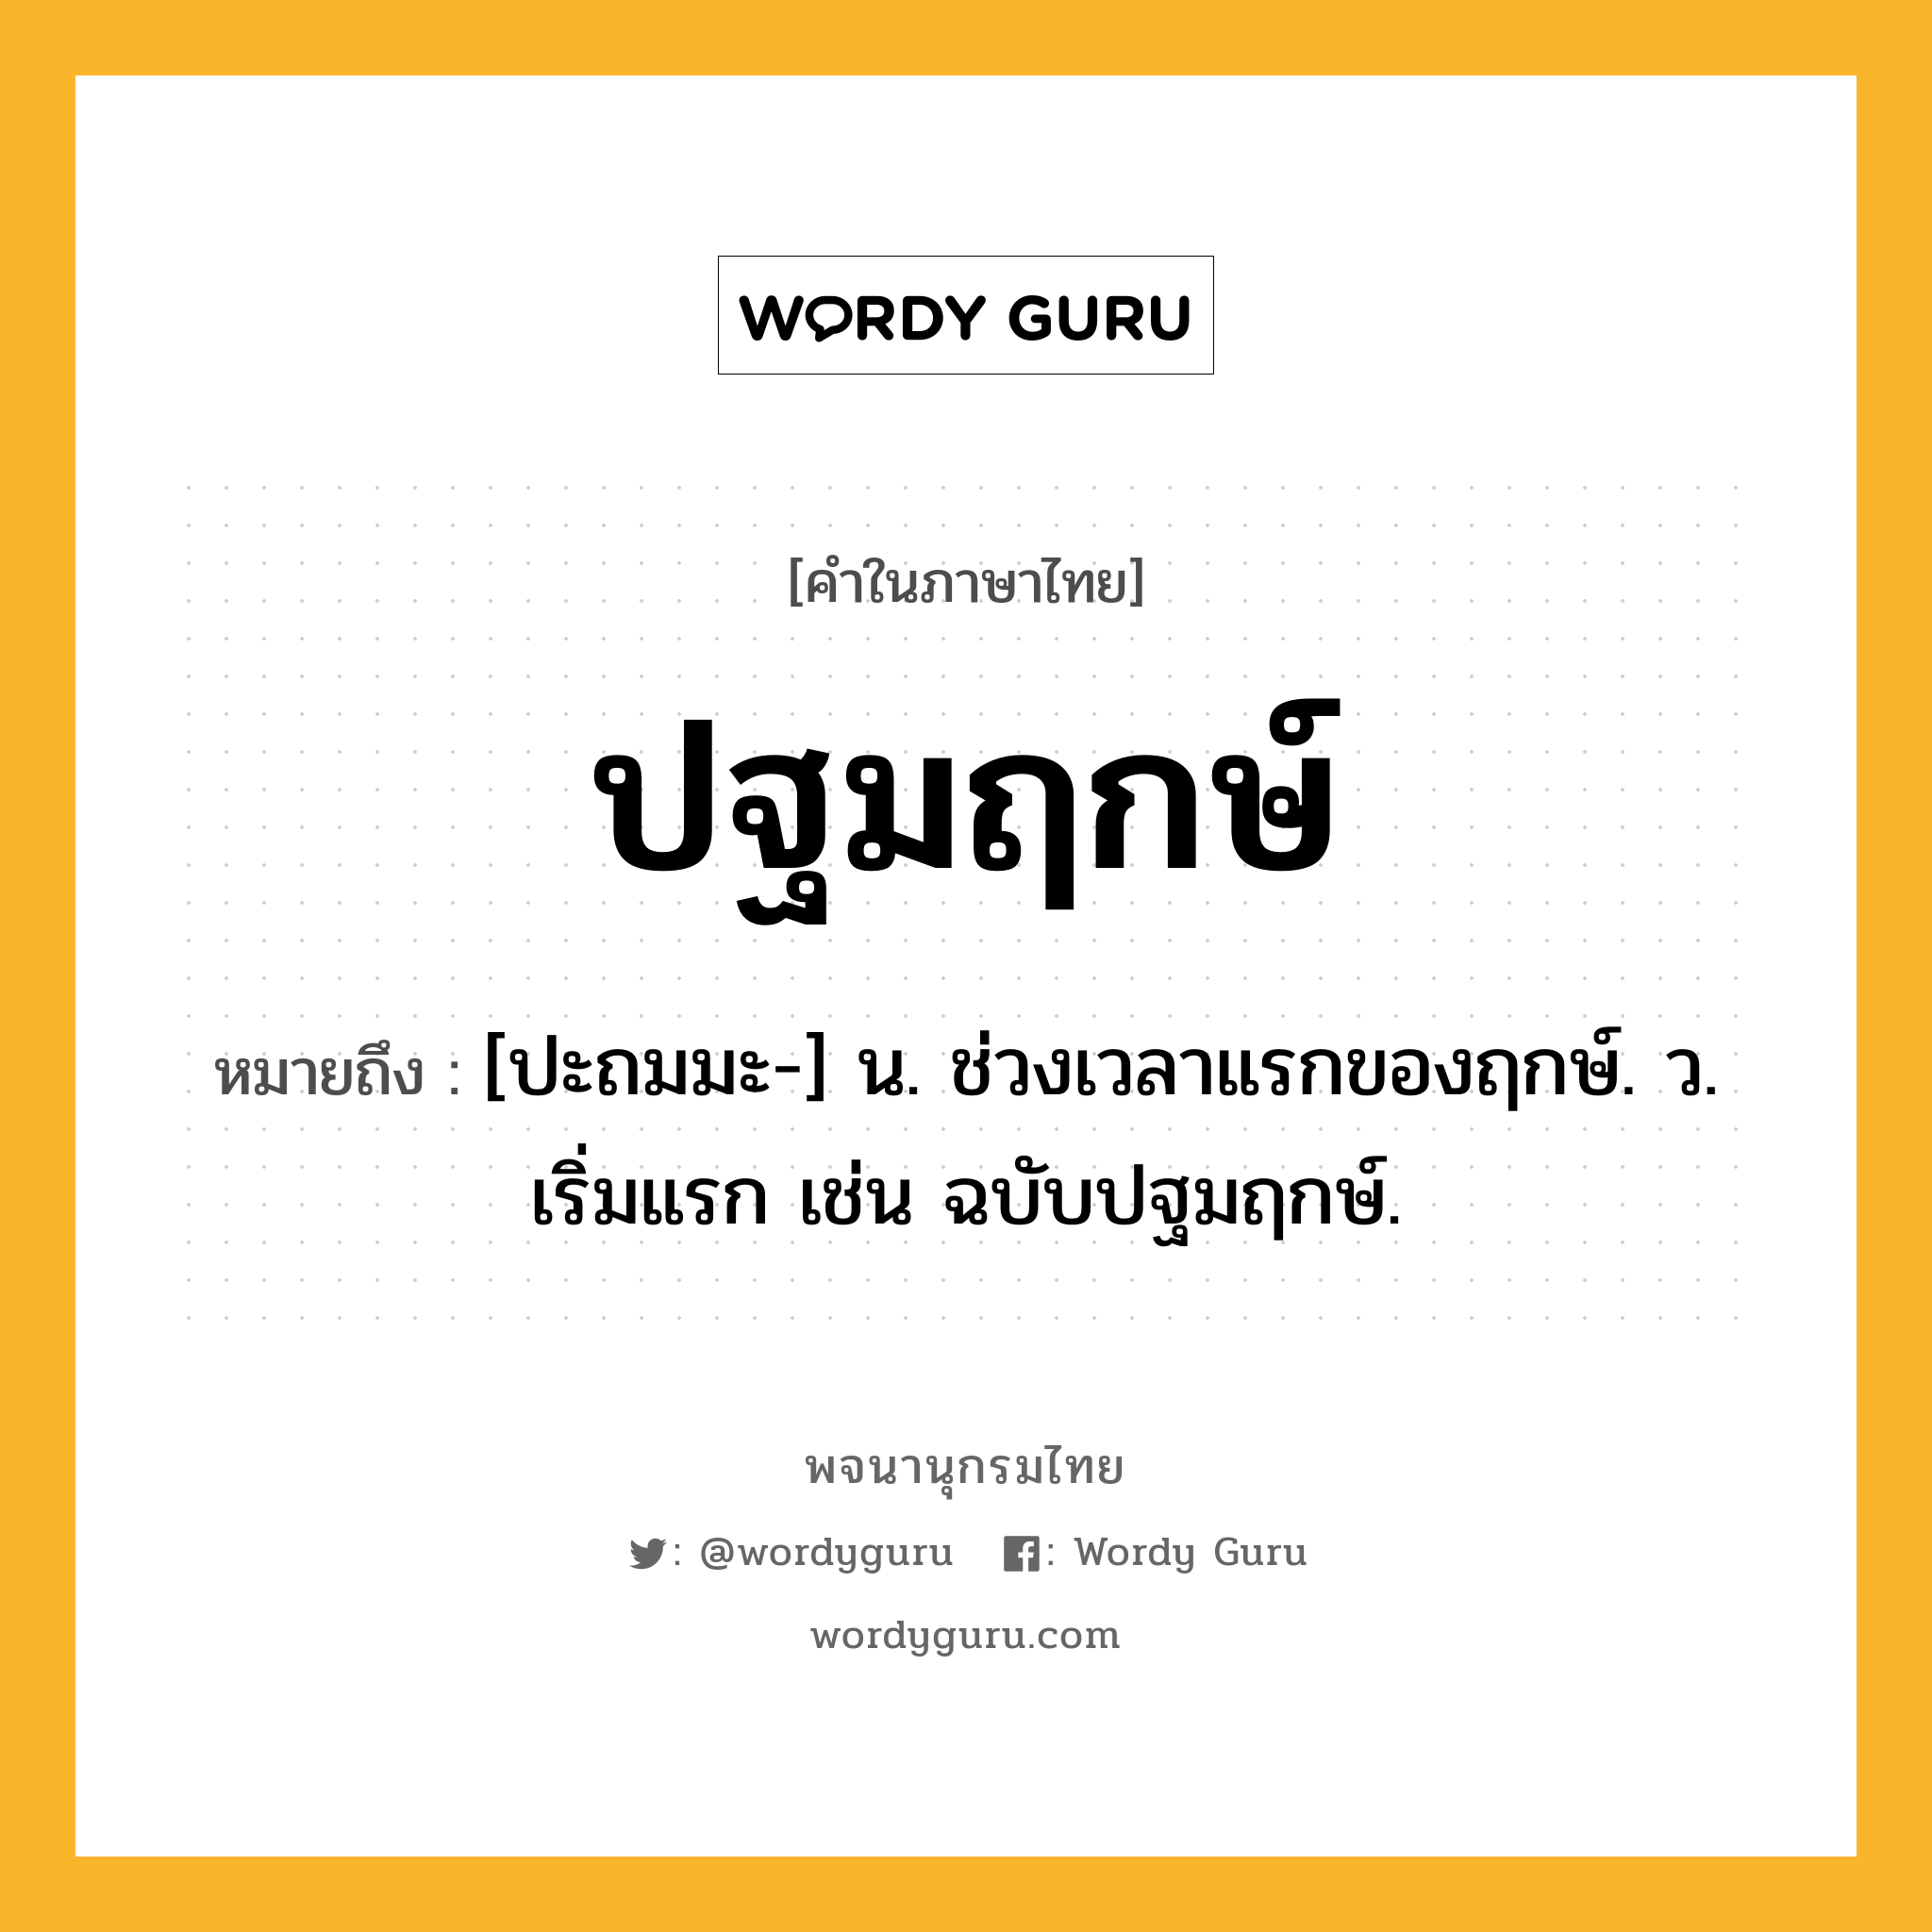 ปฐมฤกษ์ ความหมาย หมายถึงอะไร?, คำในภาษาไทย ปฐมฤกษ์ หมายถึง [ปะถมมะ-] น. ช่วงเวลาแรกของฤกษ์. ว. เริ่มแรก เช่น ฉบับปฐมฤกษ์.